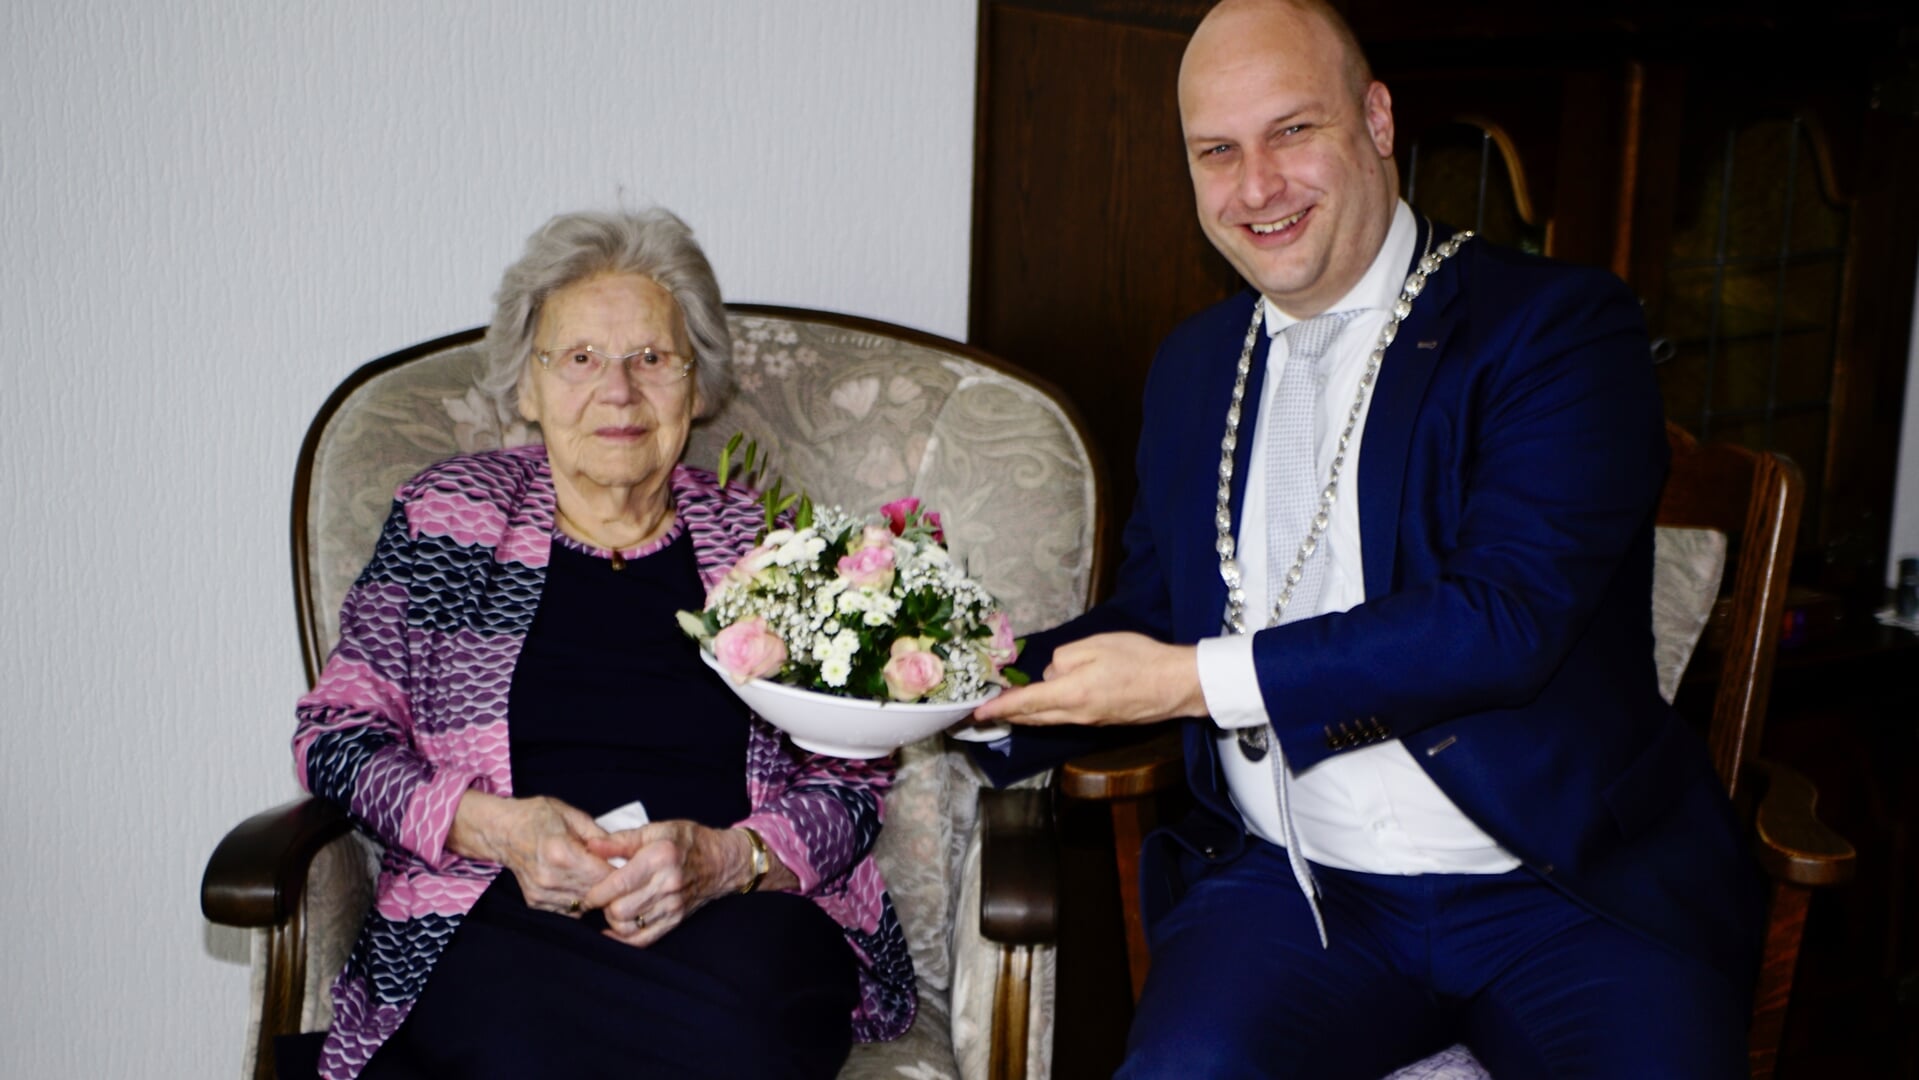 De 101-jarige Plonia van Tienhoven-Van der Spek ontvangt bloemen van locoburgemeester Schuurman.